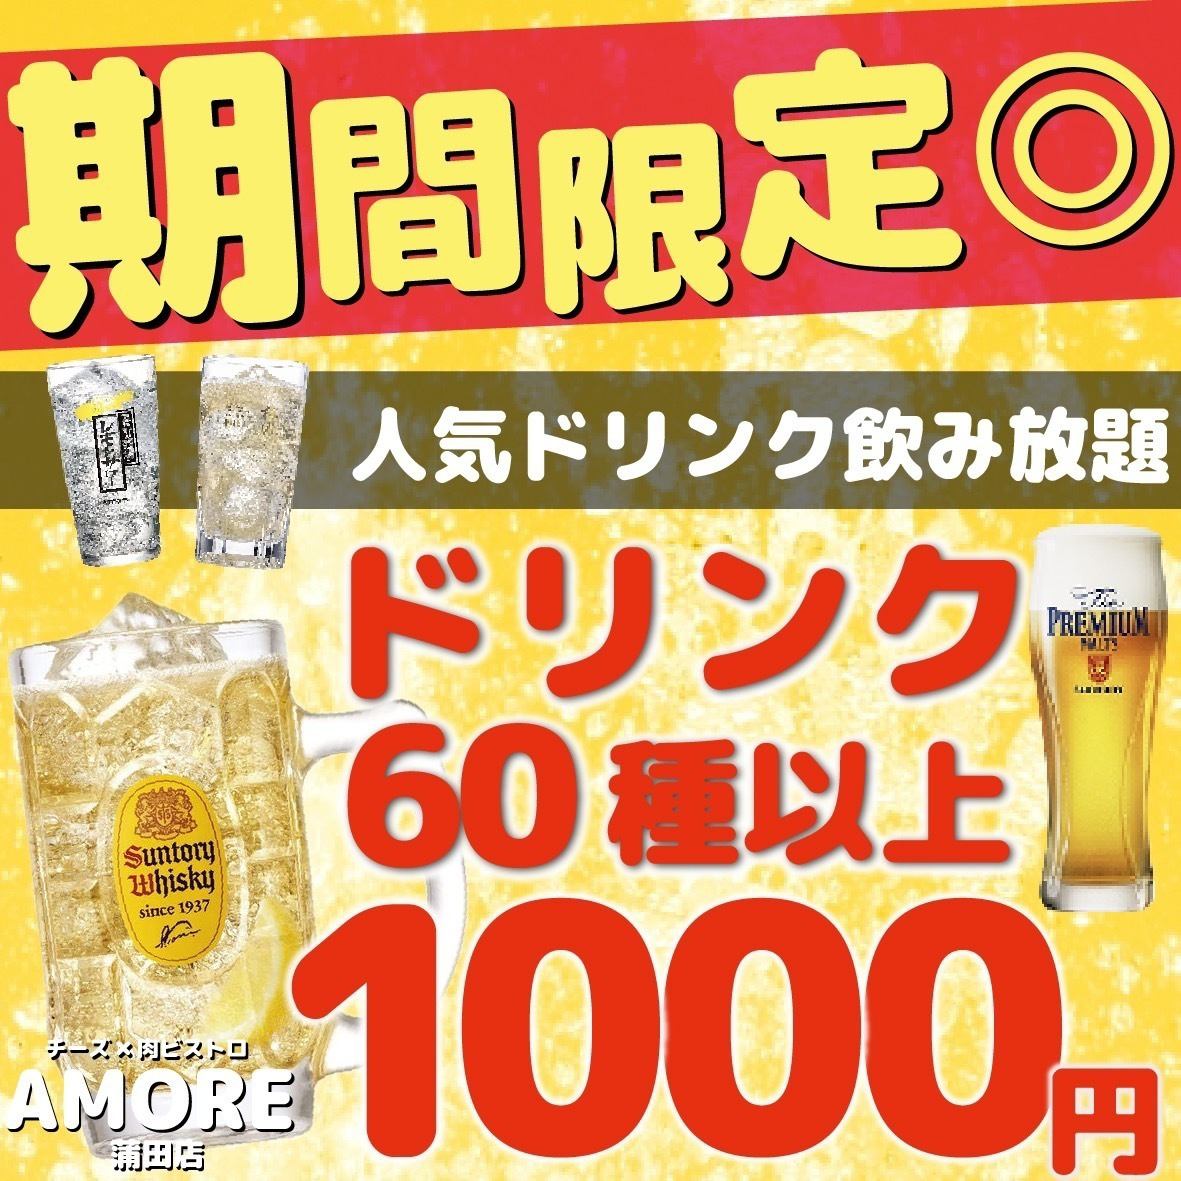 【超值♪】2小時60種飲料無限暢飲1980日圓→980日圓